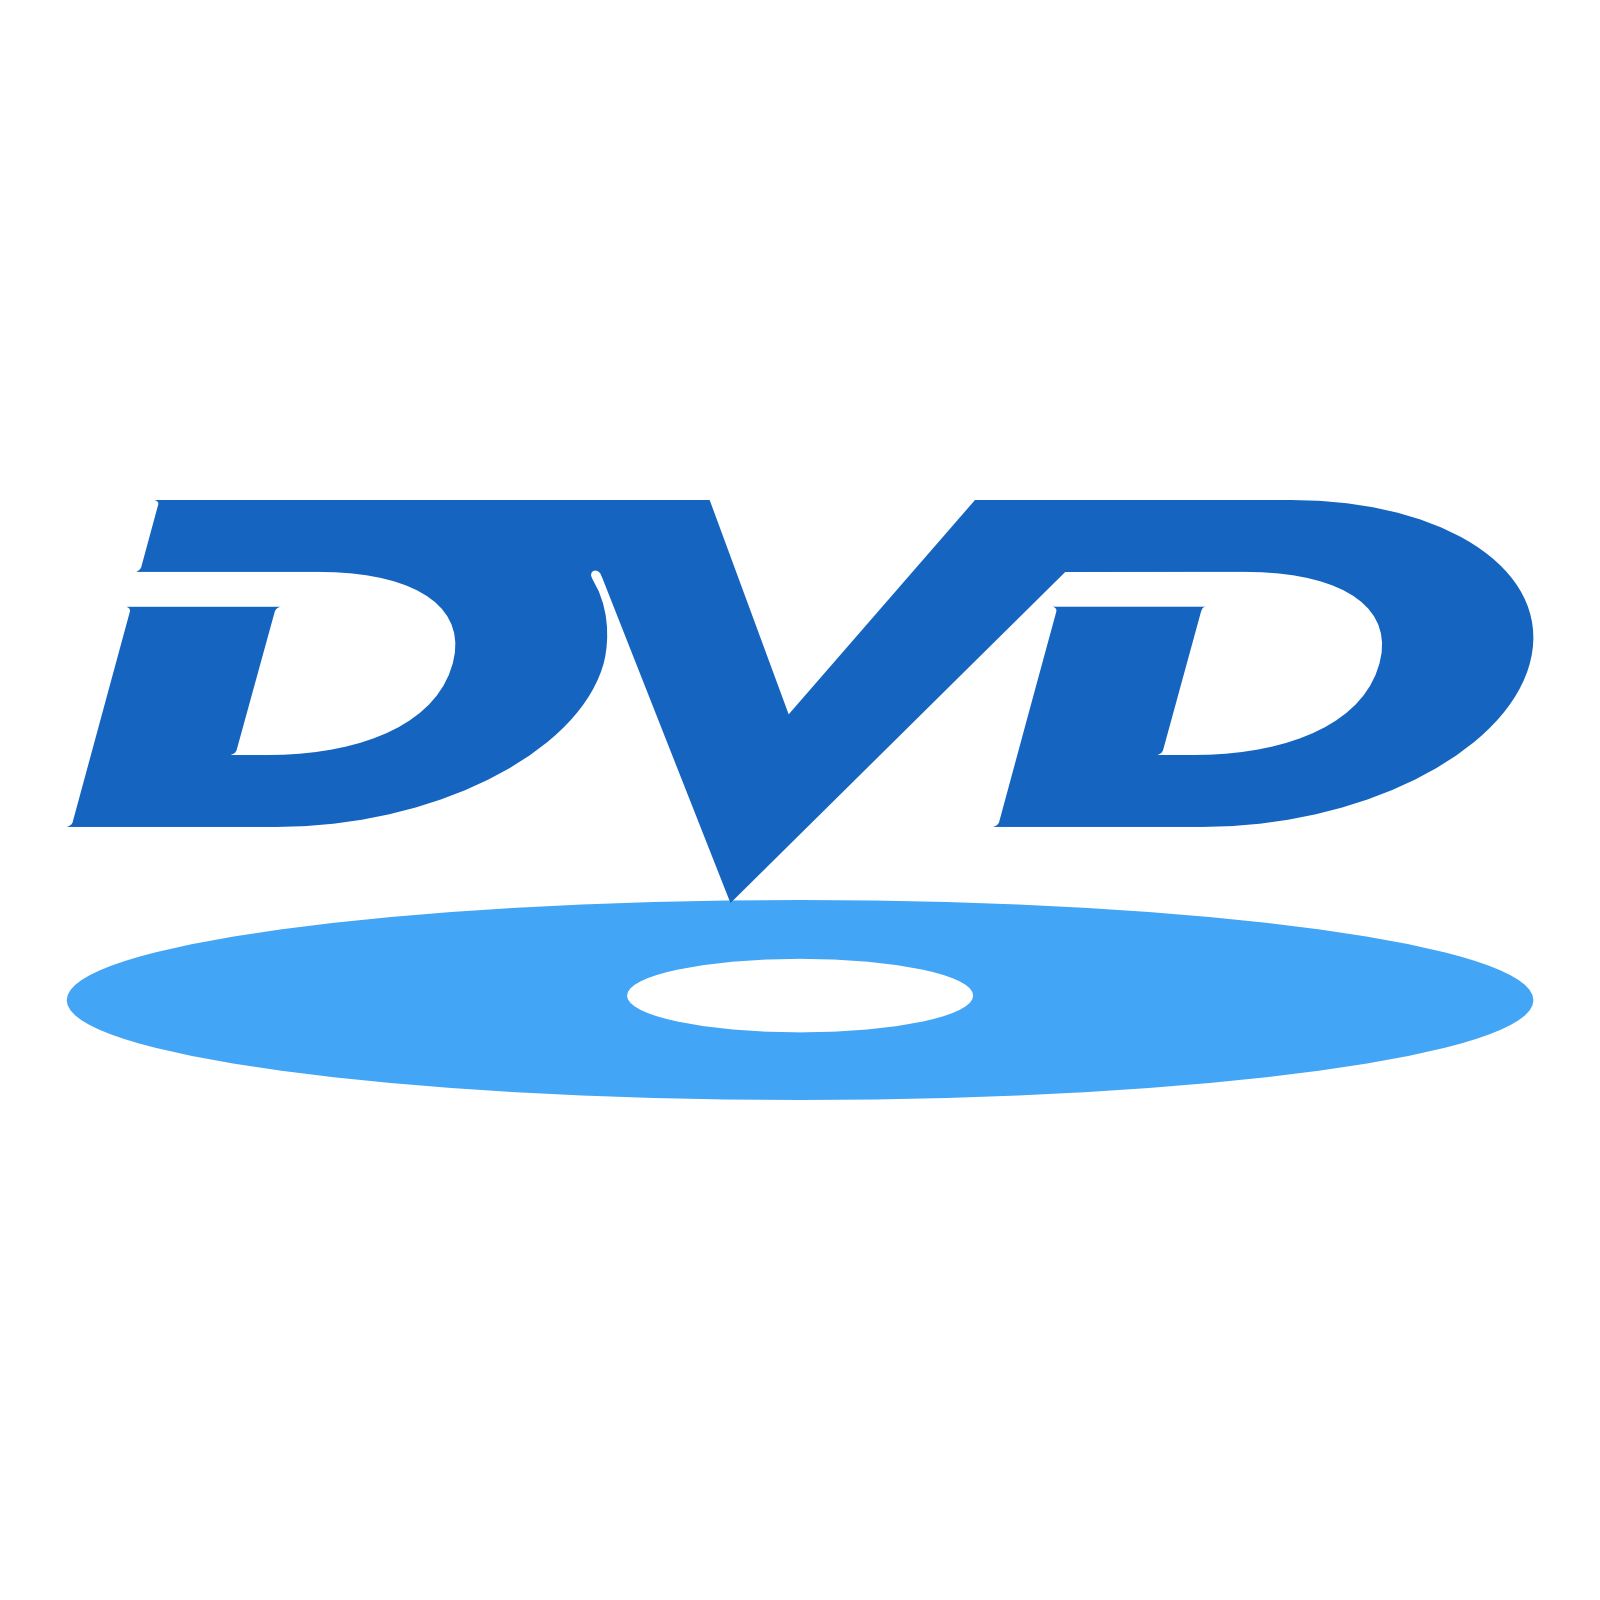 DVD Disc Logo - Dvd logos download